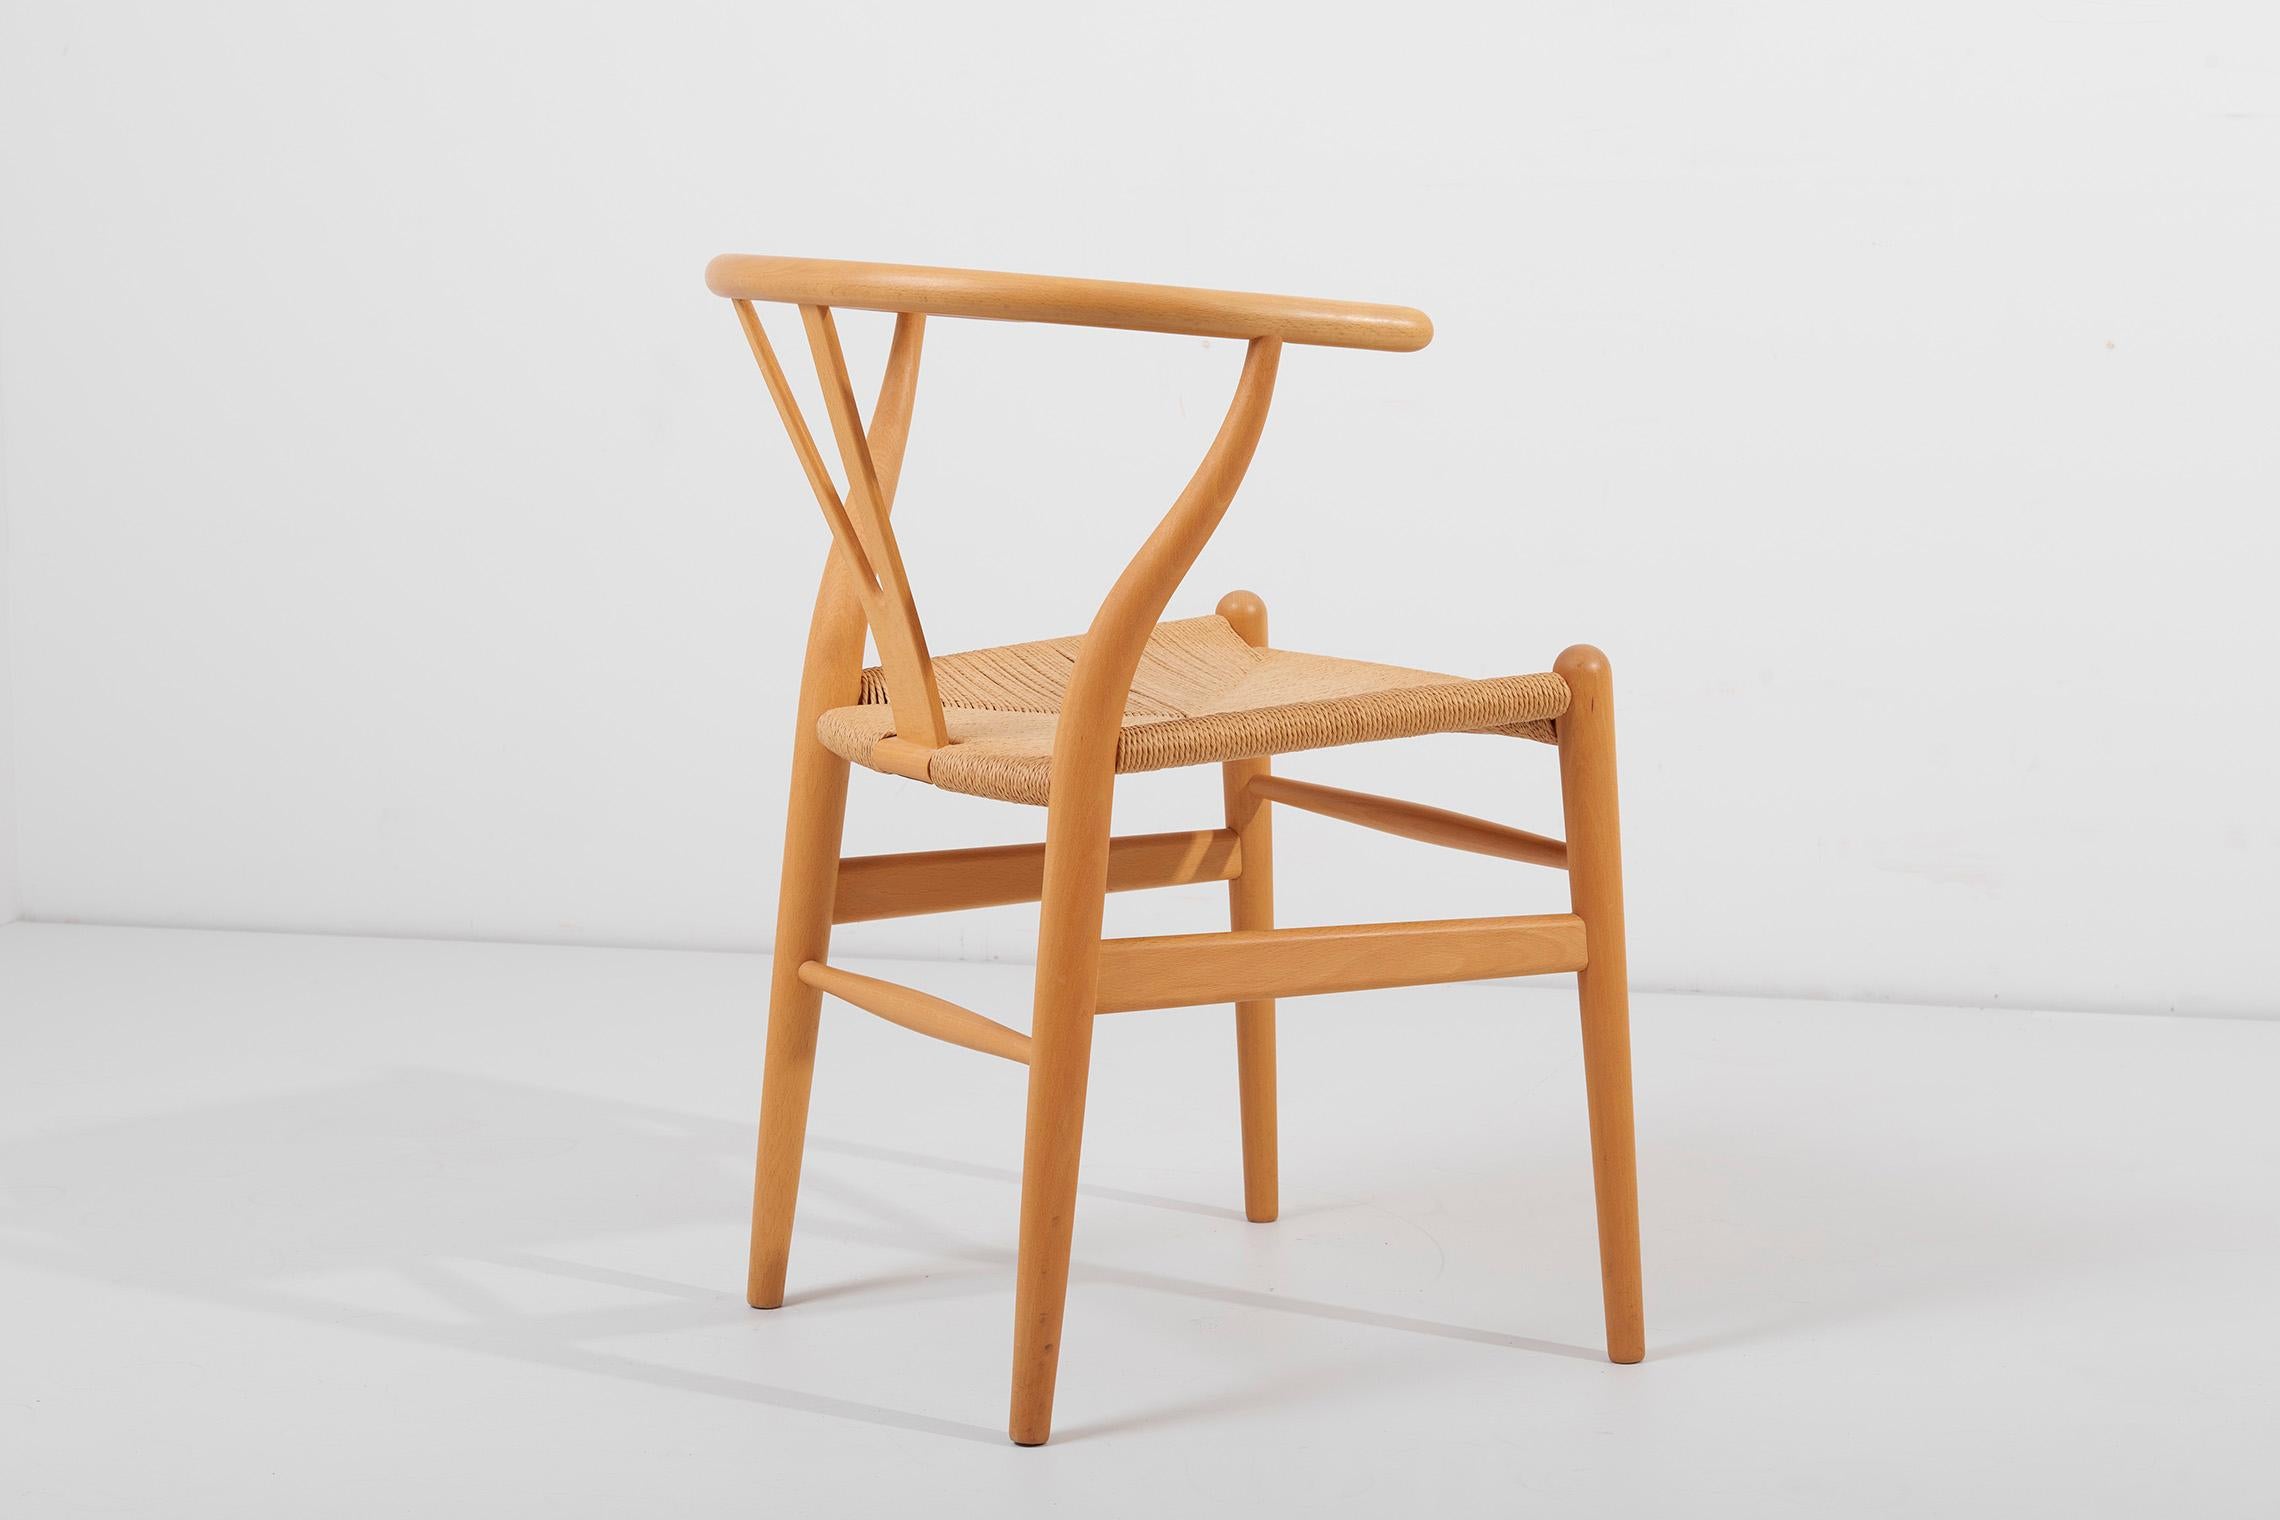 1 of 2 Pairs of Hans Wegner Wishbone Chairs, Denmark, 1960s 1